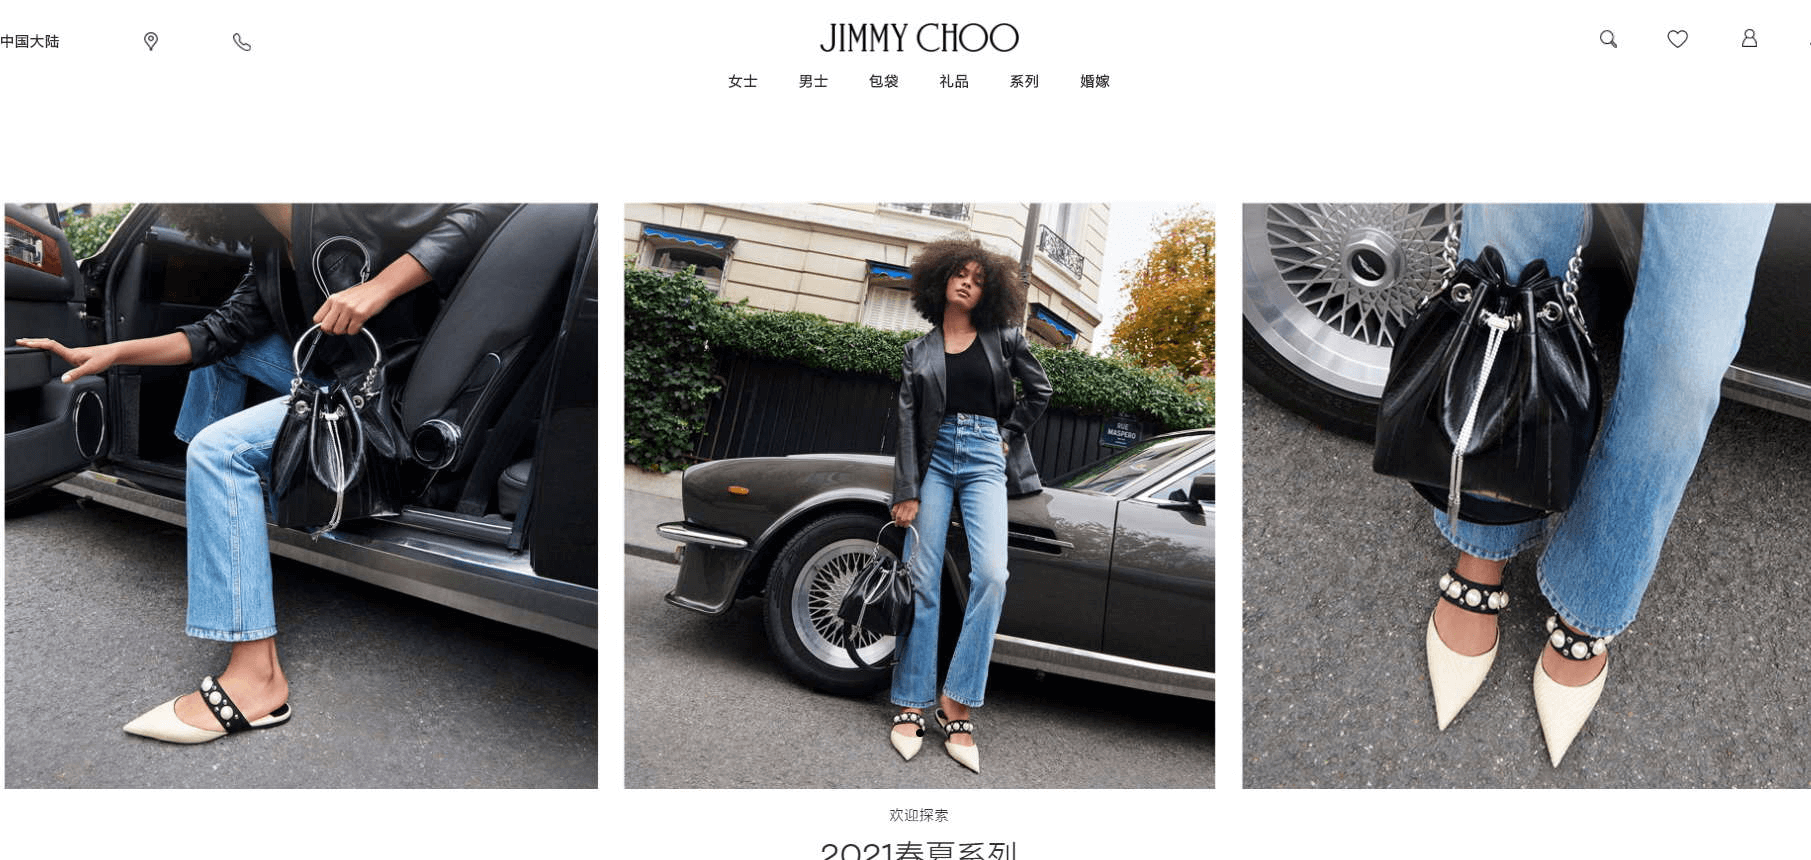 Jimmy Choo中文官网-周仰杰设计师品牌 鞋履、包袋、香水等产品